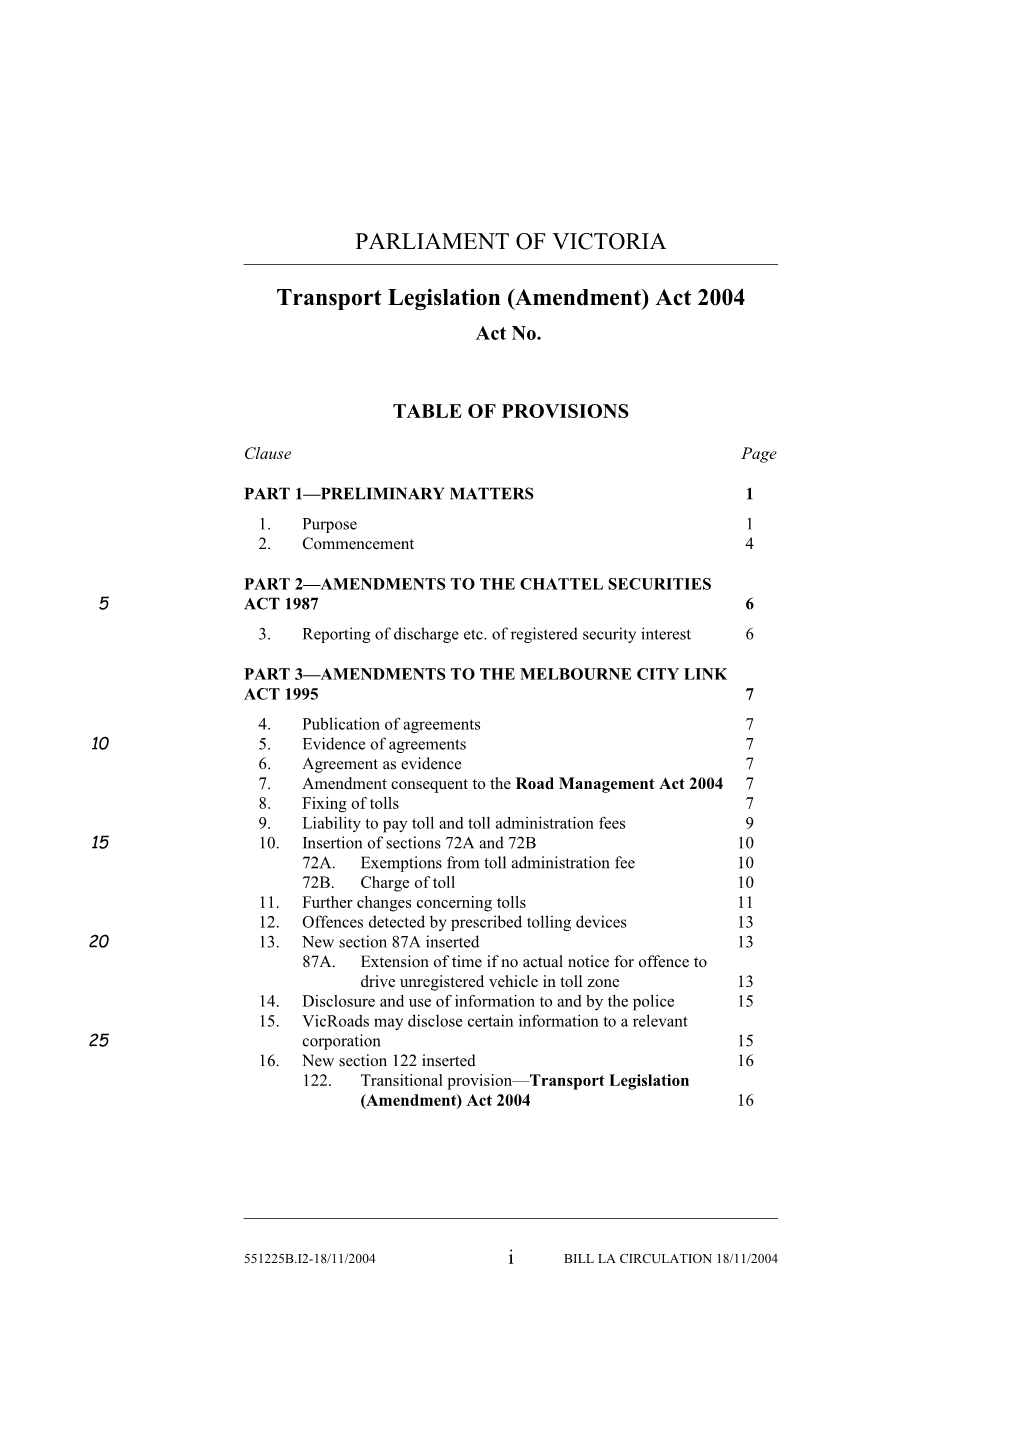 Transport Legislation (Amendment) Act 2004